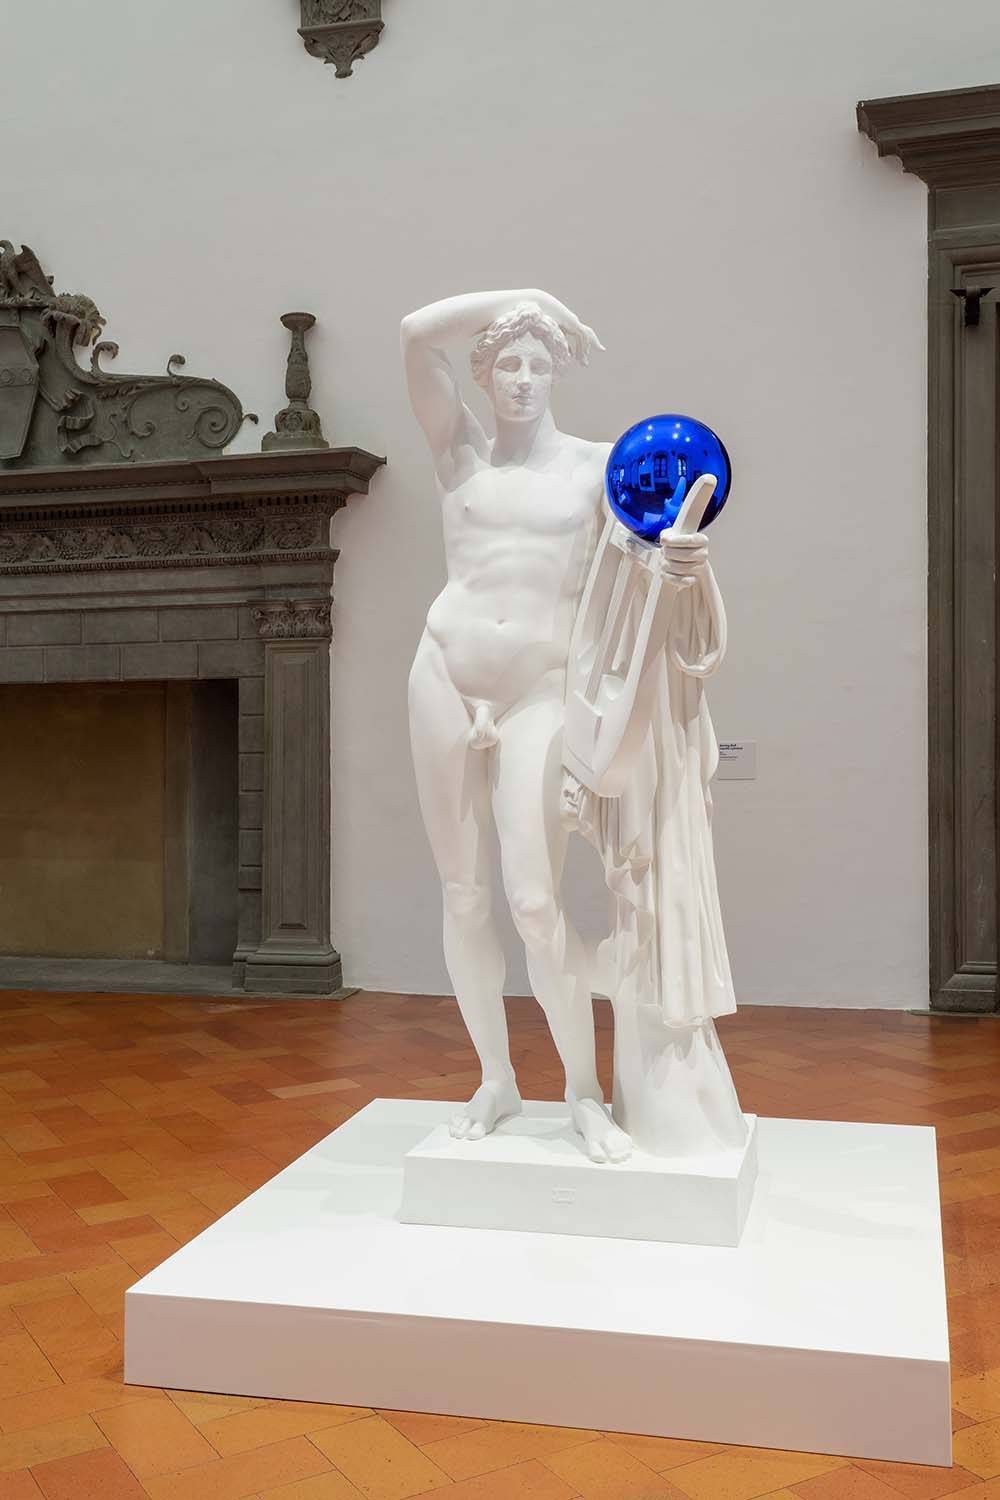 Wystawa Jeffa Koonsa „Shine” w Palazzo Strozzi we Florencji. Fot. Ela Bialkowska OKNO studio